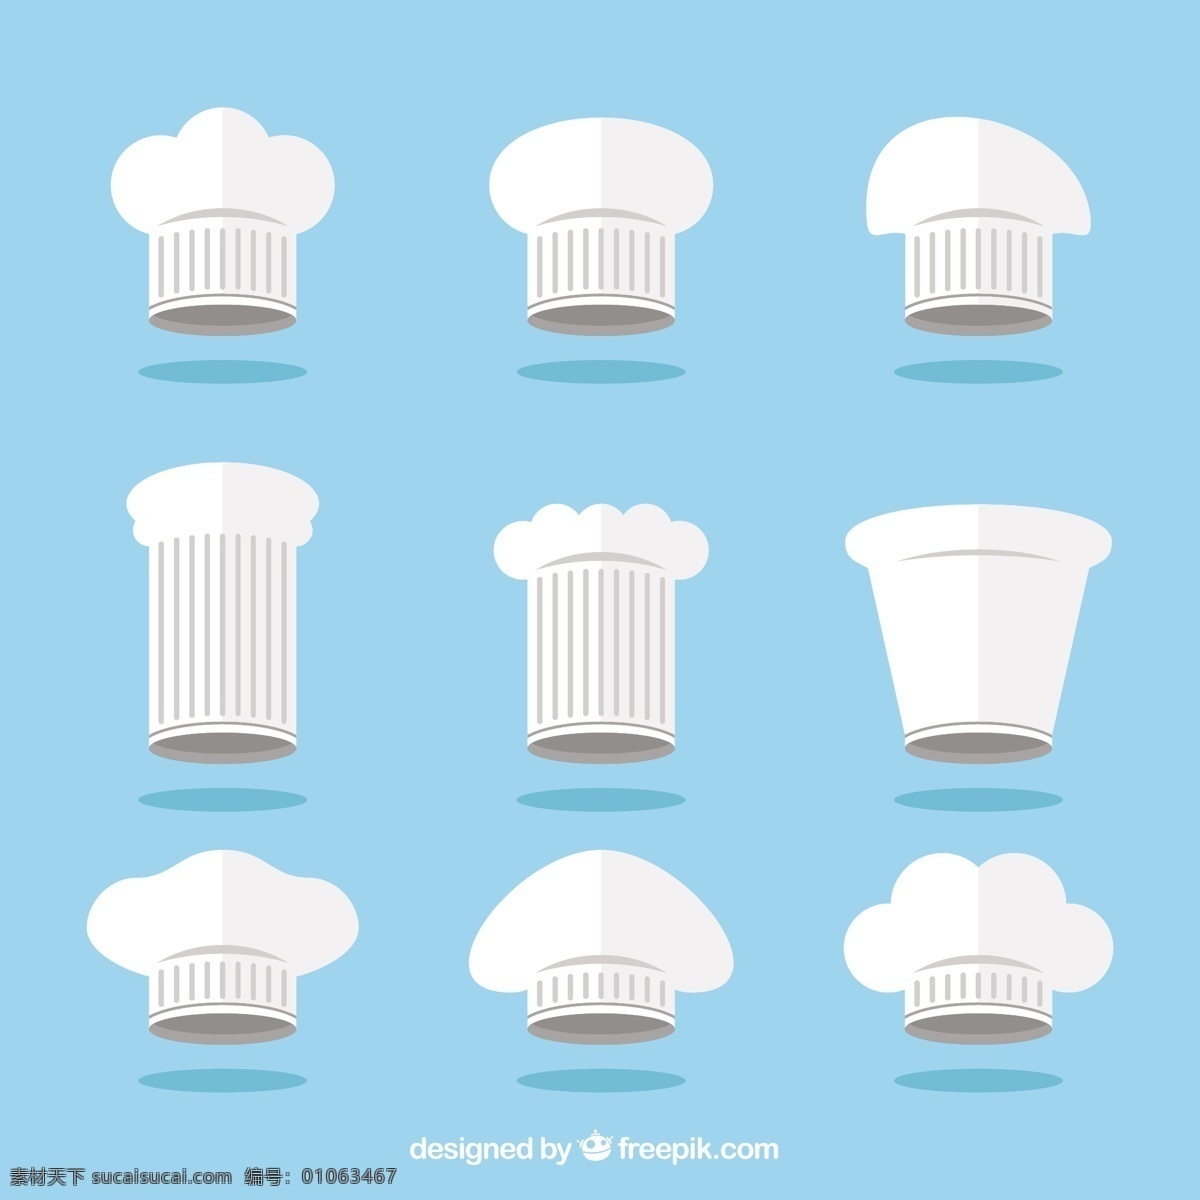 手绘 扁平 风格 各种 厨师 帽 矢量 扁平风格 各种厨师帽 矢量素材